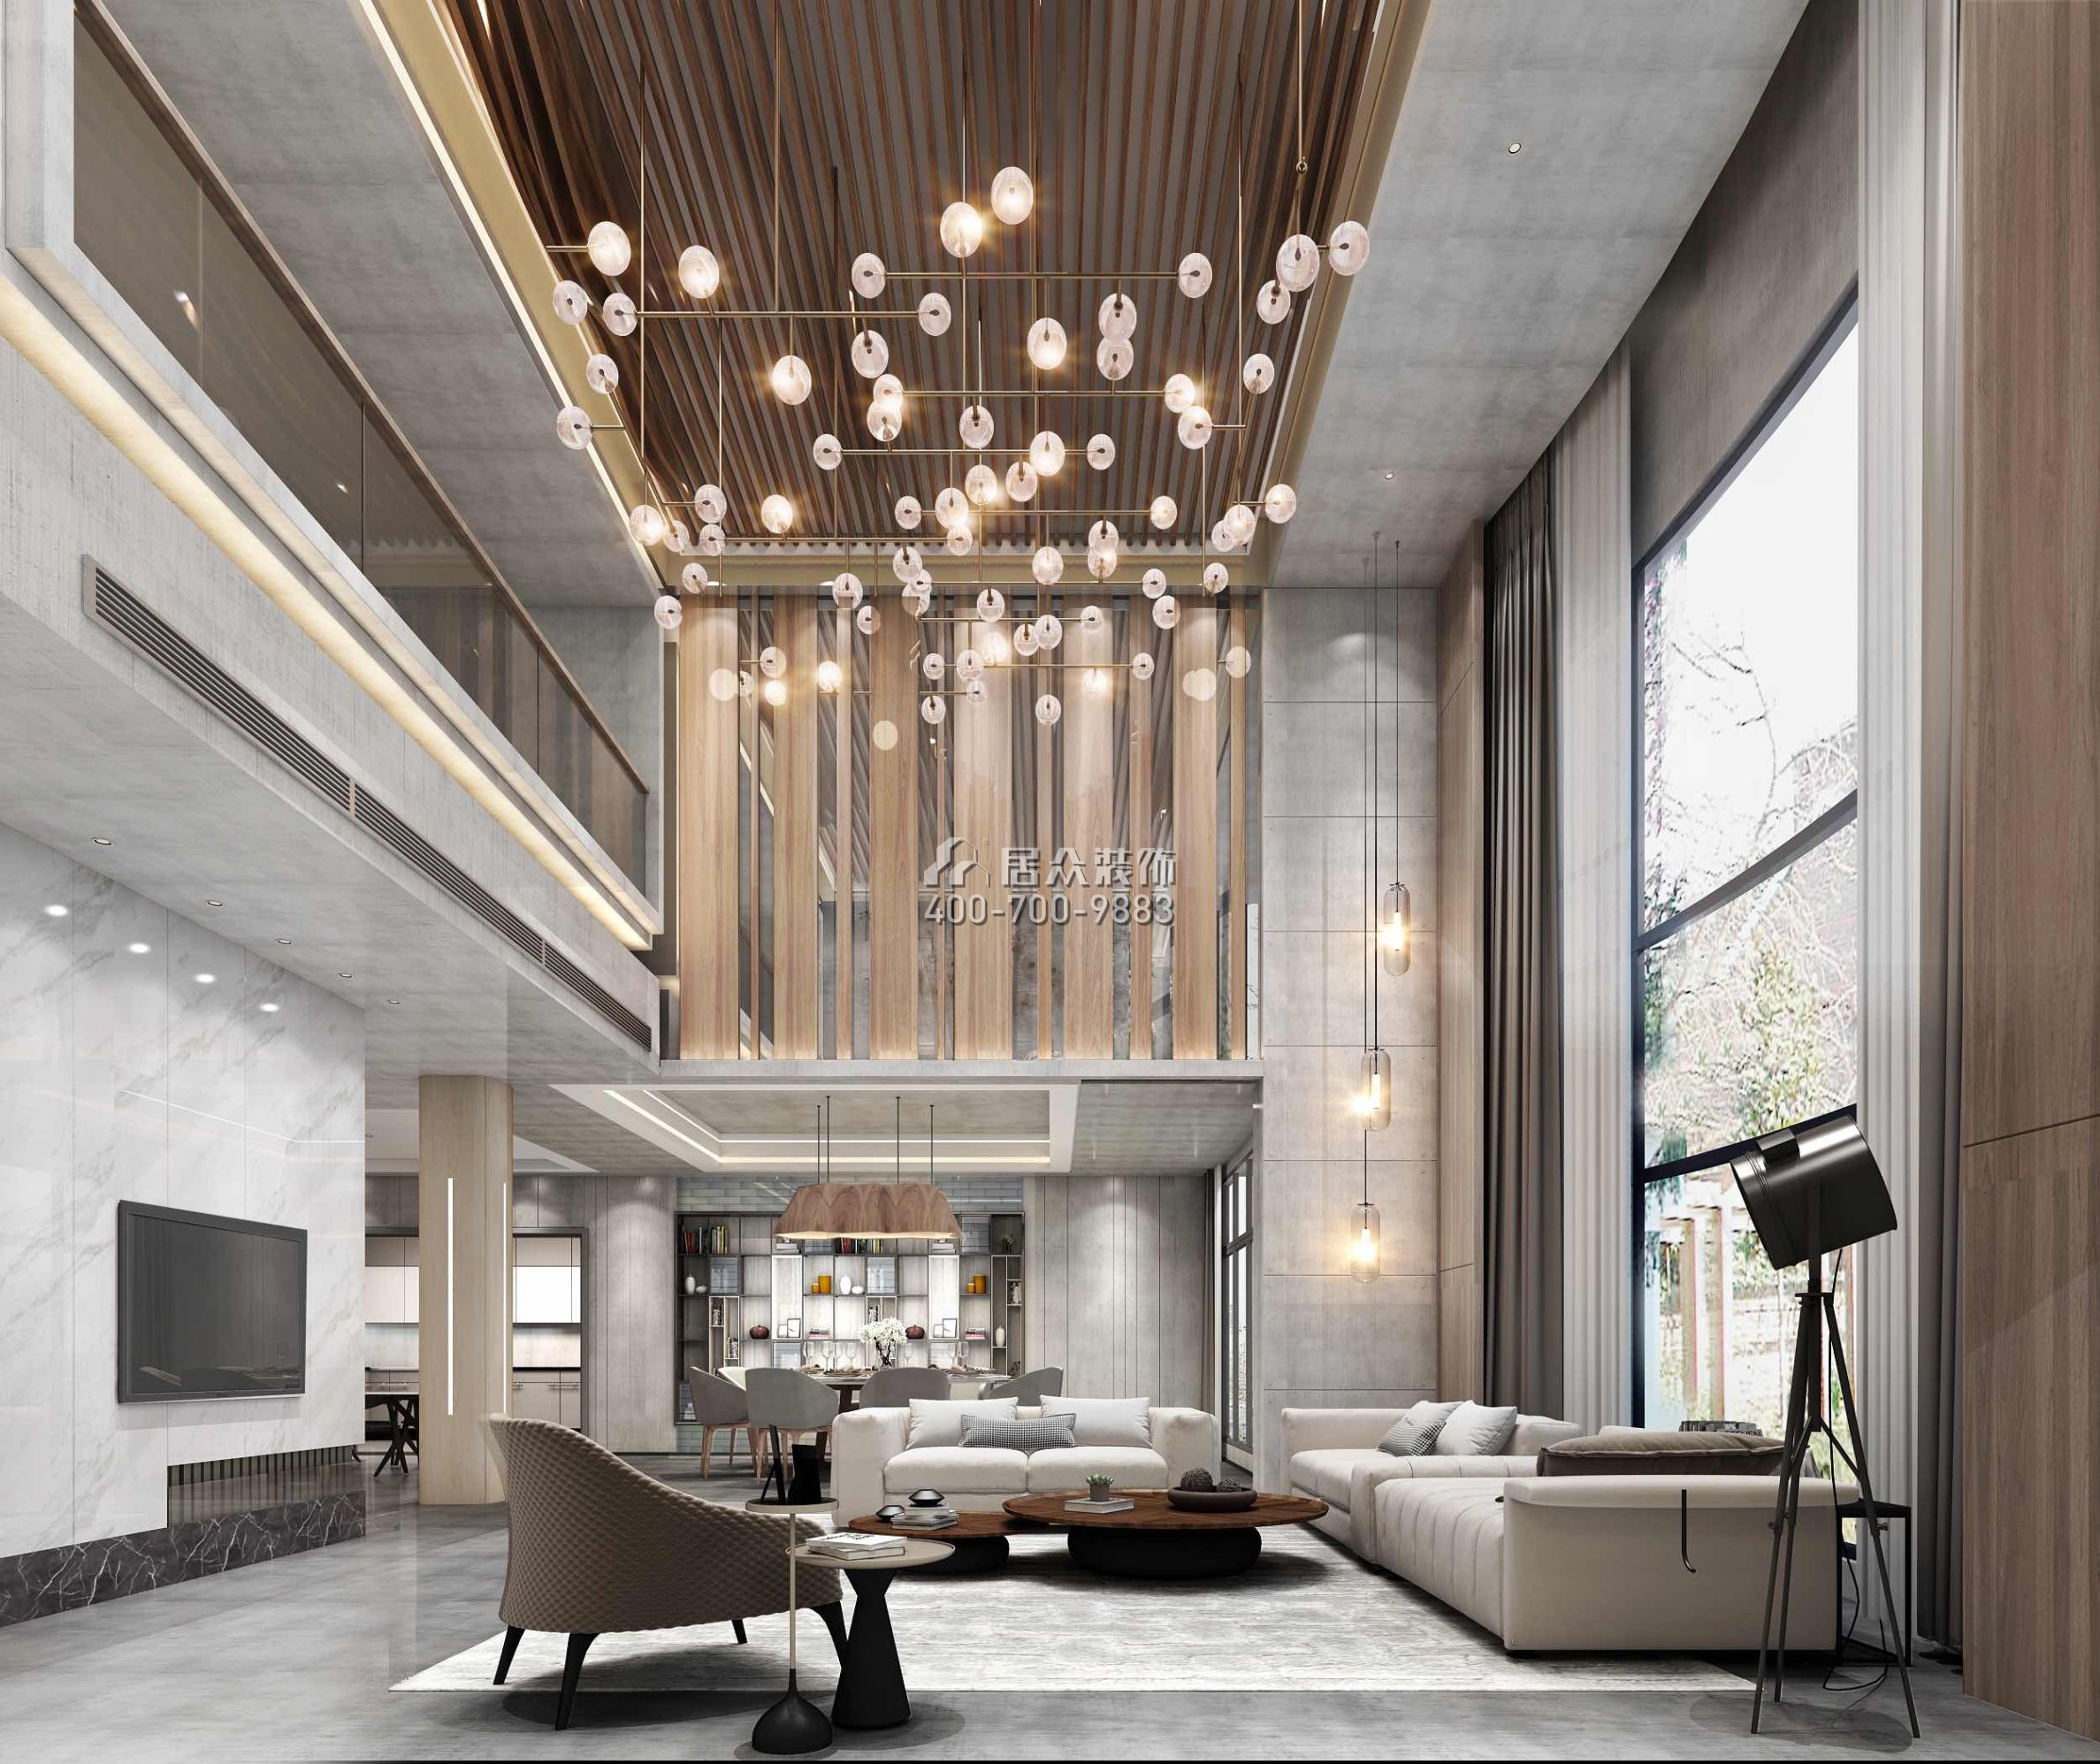 海逸豪庭1100平方米北歐風格別墅戶型客廳裝修效果圖